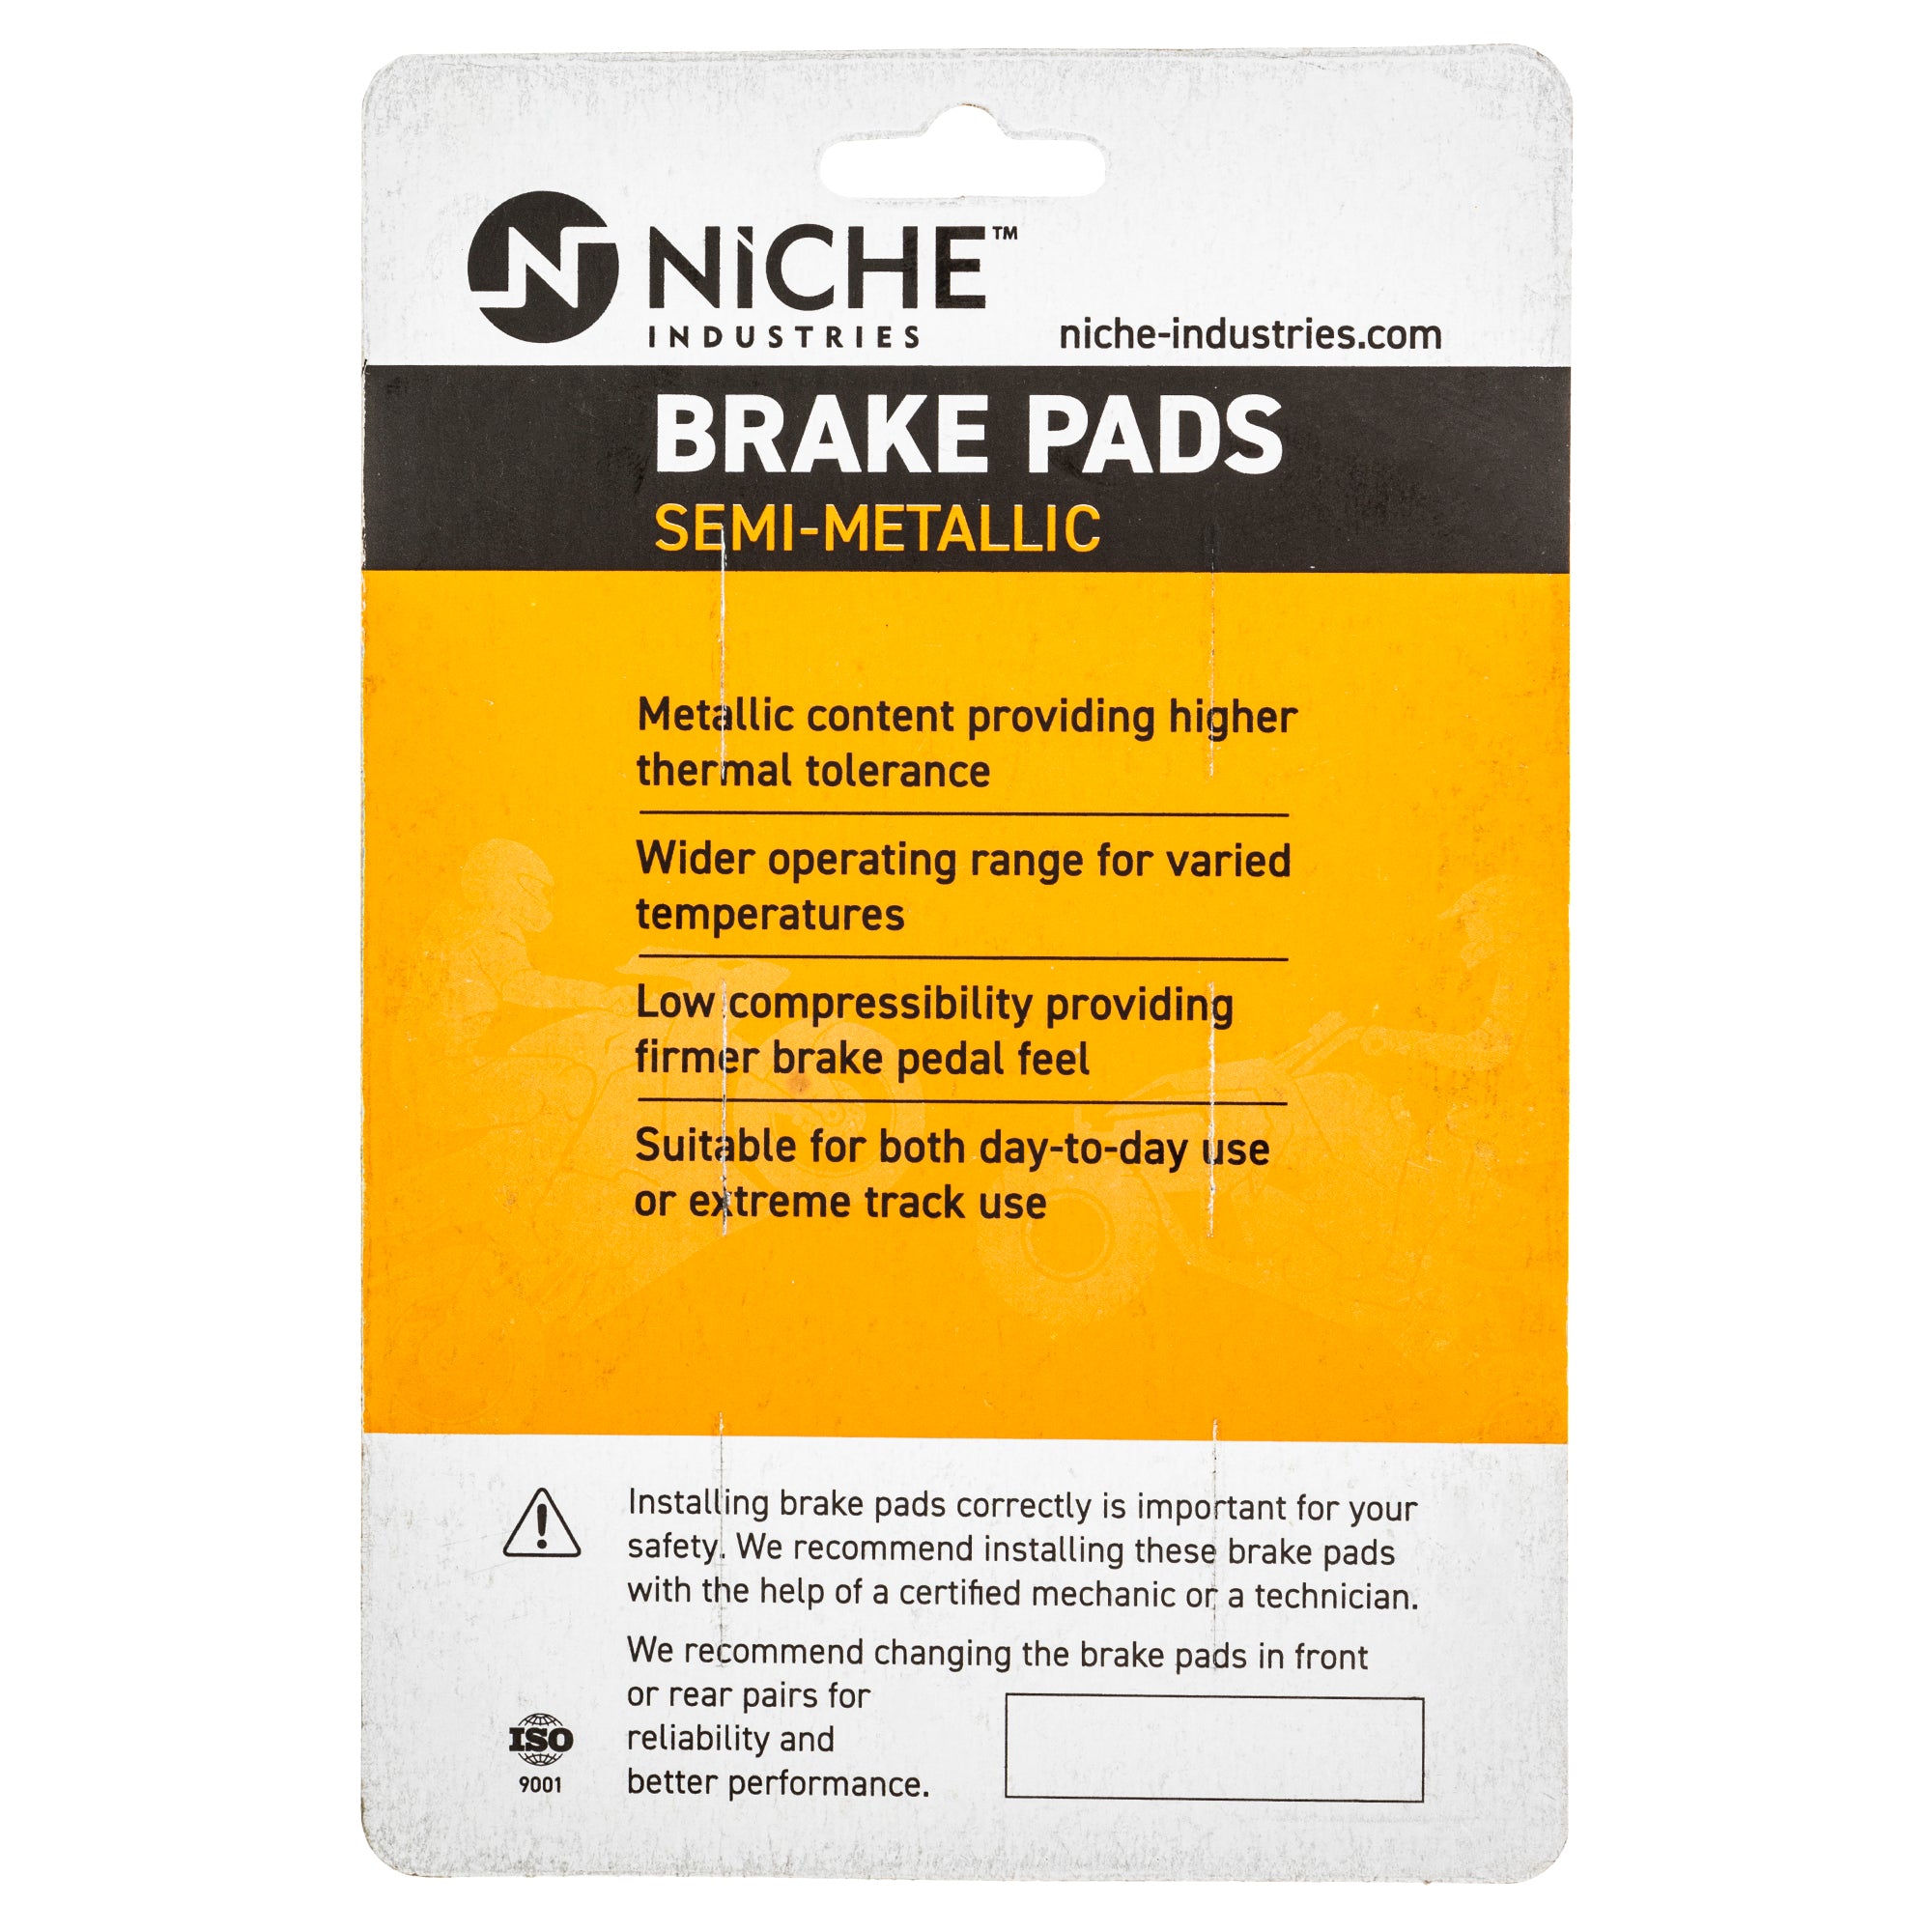 NICHE Brake Caliper Kit